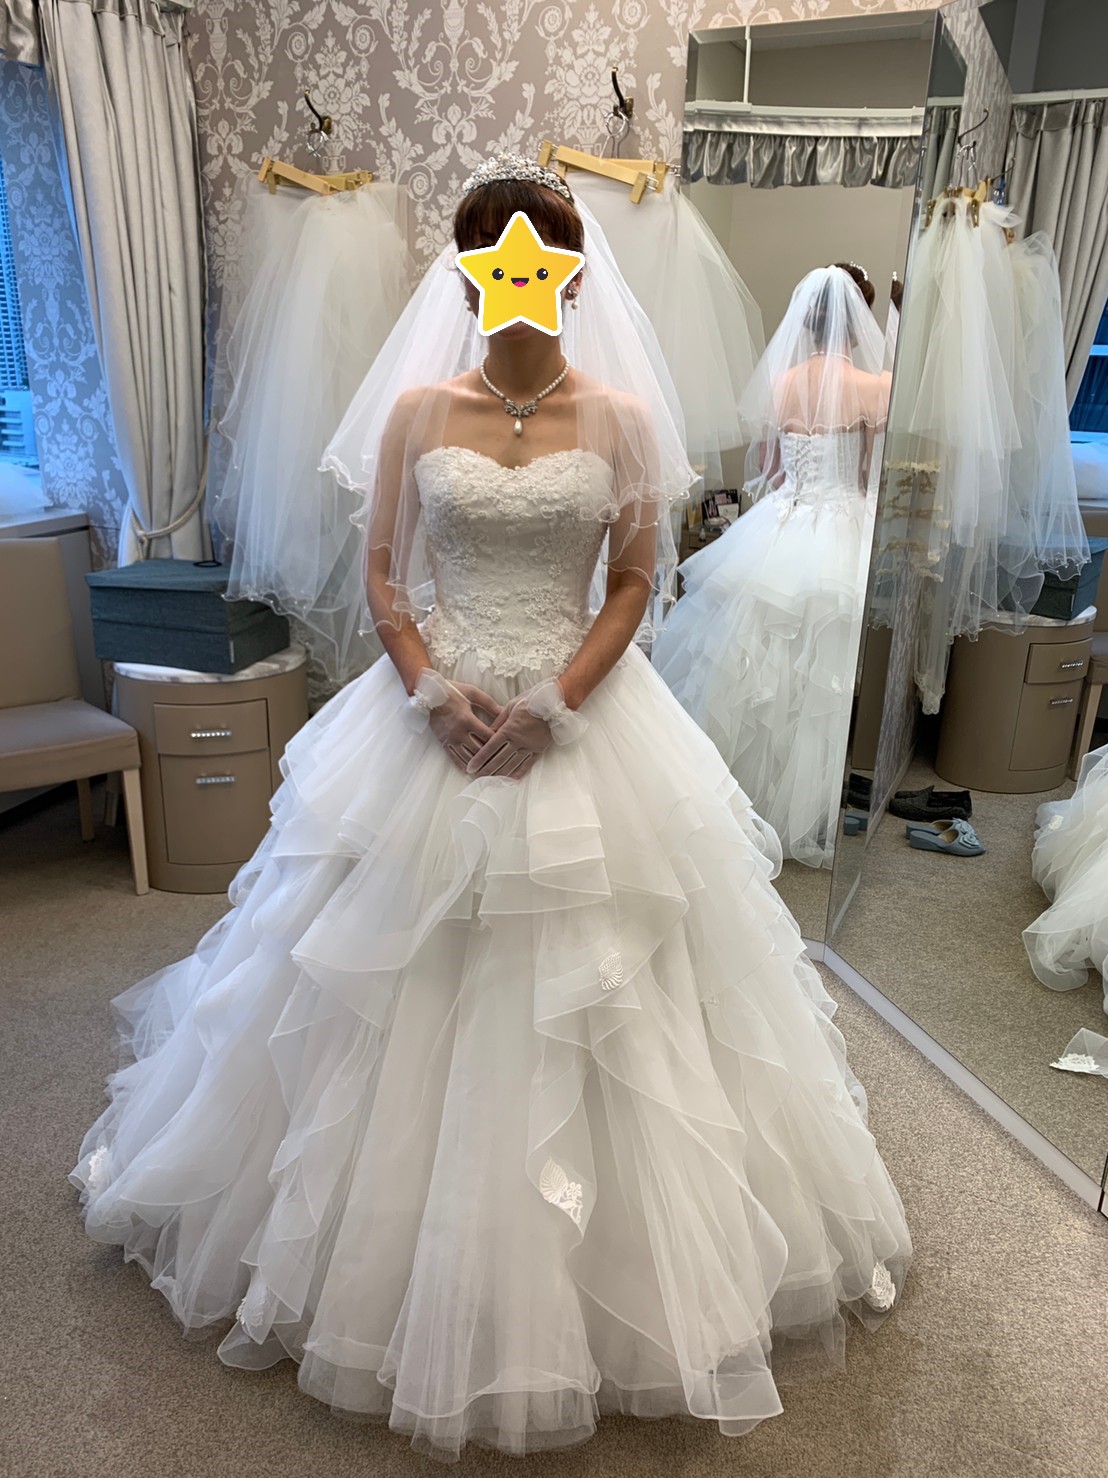 ウェディングドレスの小物合わせ☆ - アラフォープレ花嫁ひかるの結婚準備